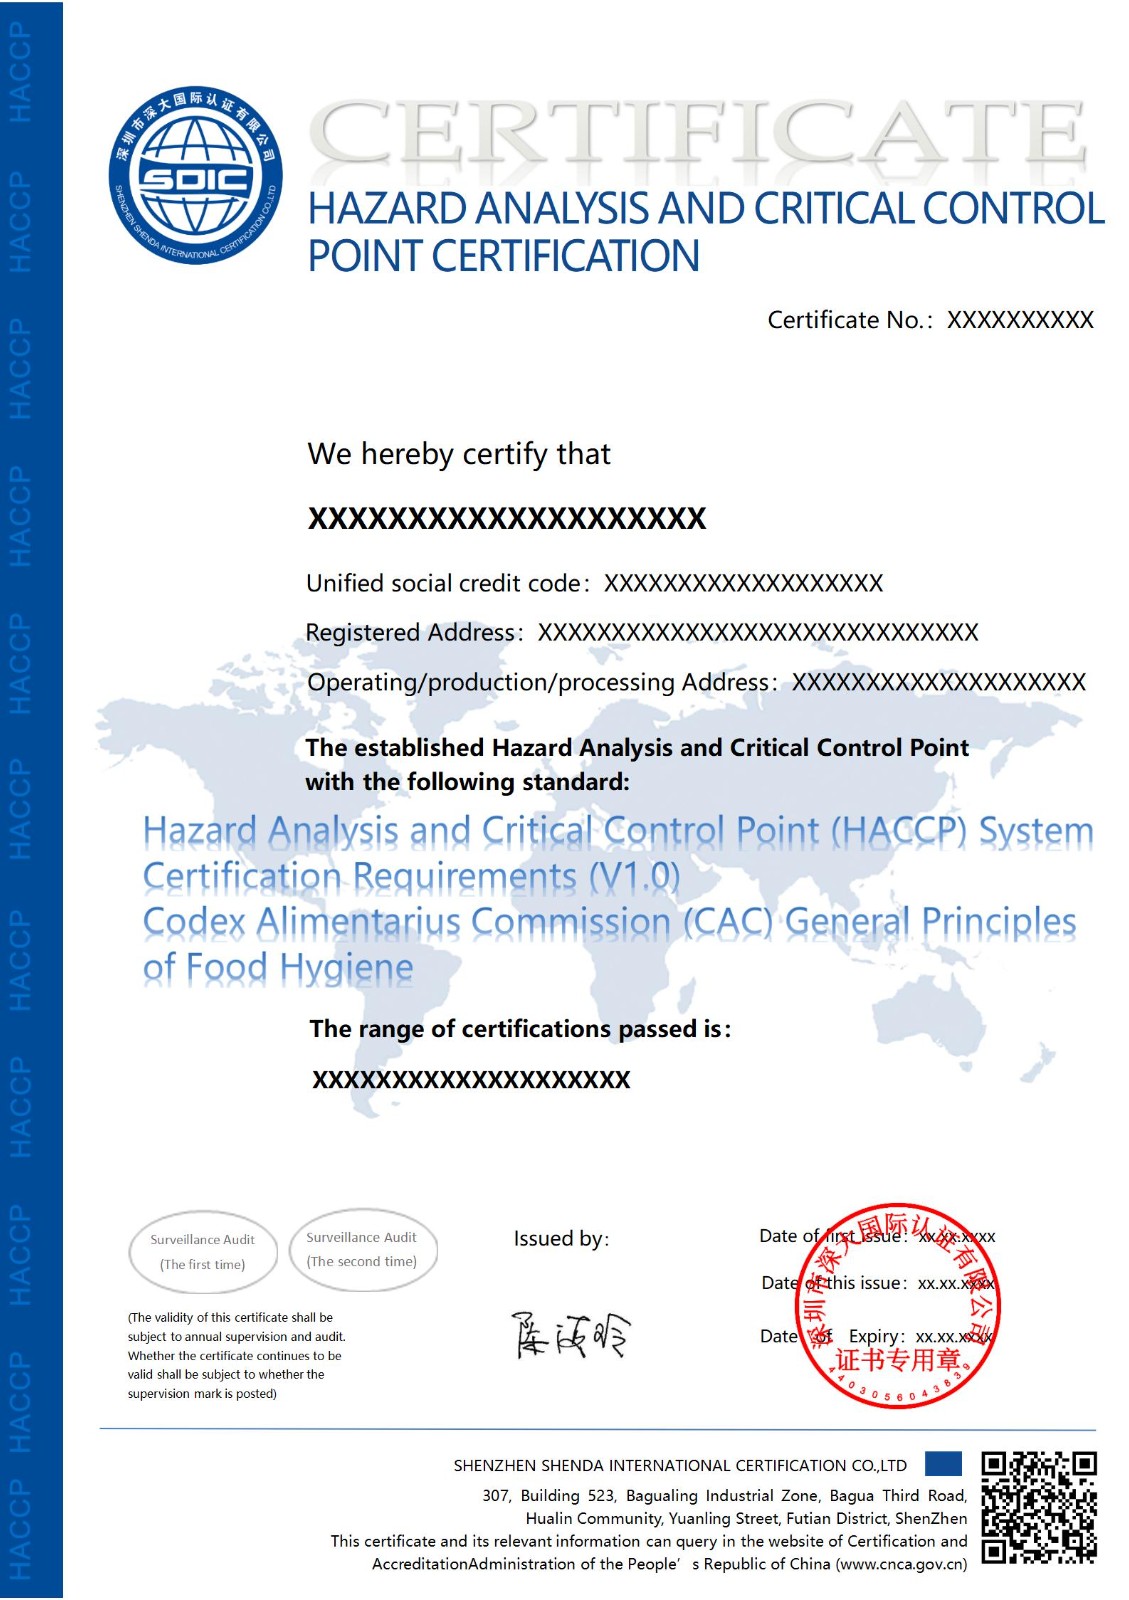 危害分析与关键控制点（HACCP）体系认证证书-出口-英文版